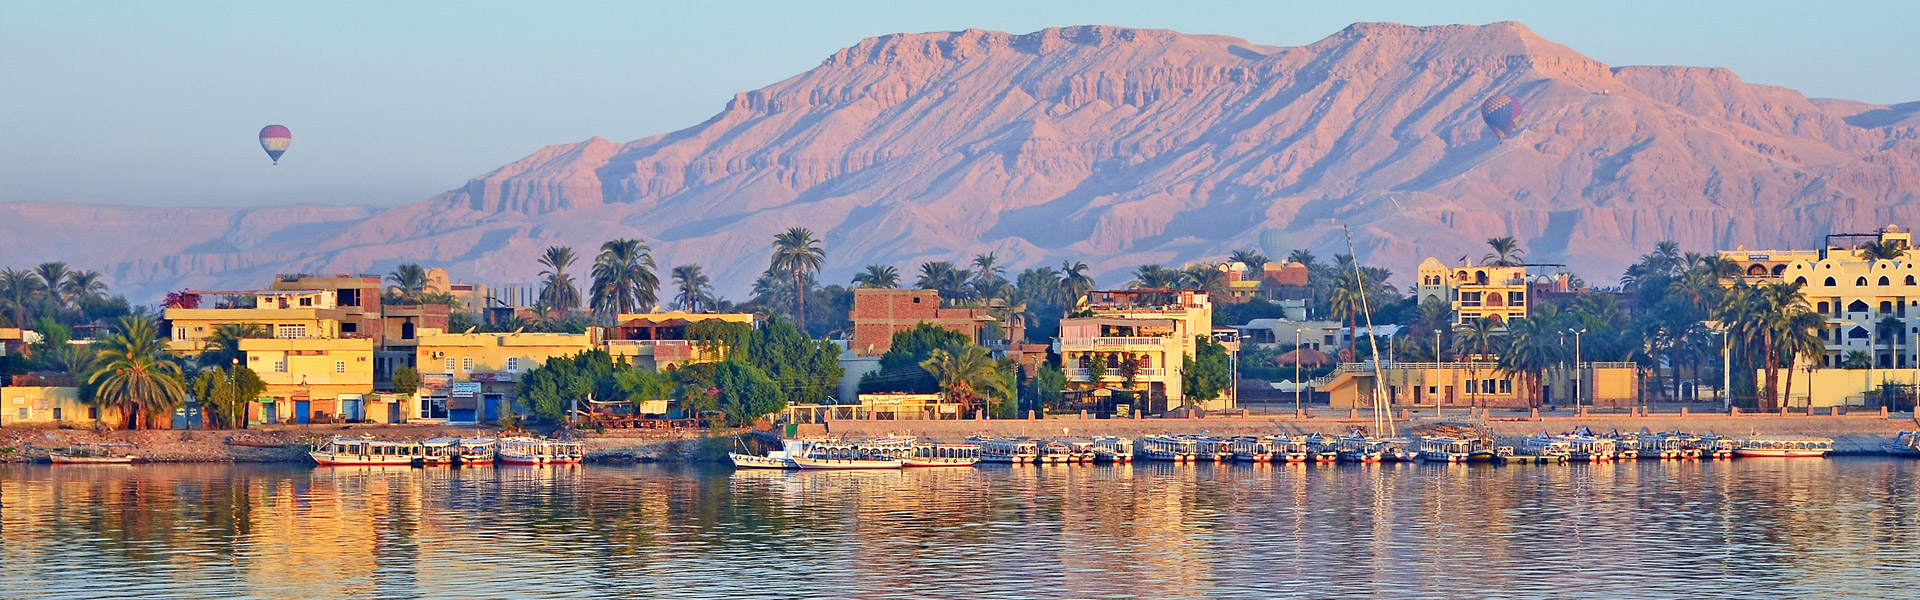 SPLENDORS OF EGYPT & THE NILE